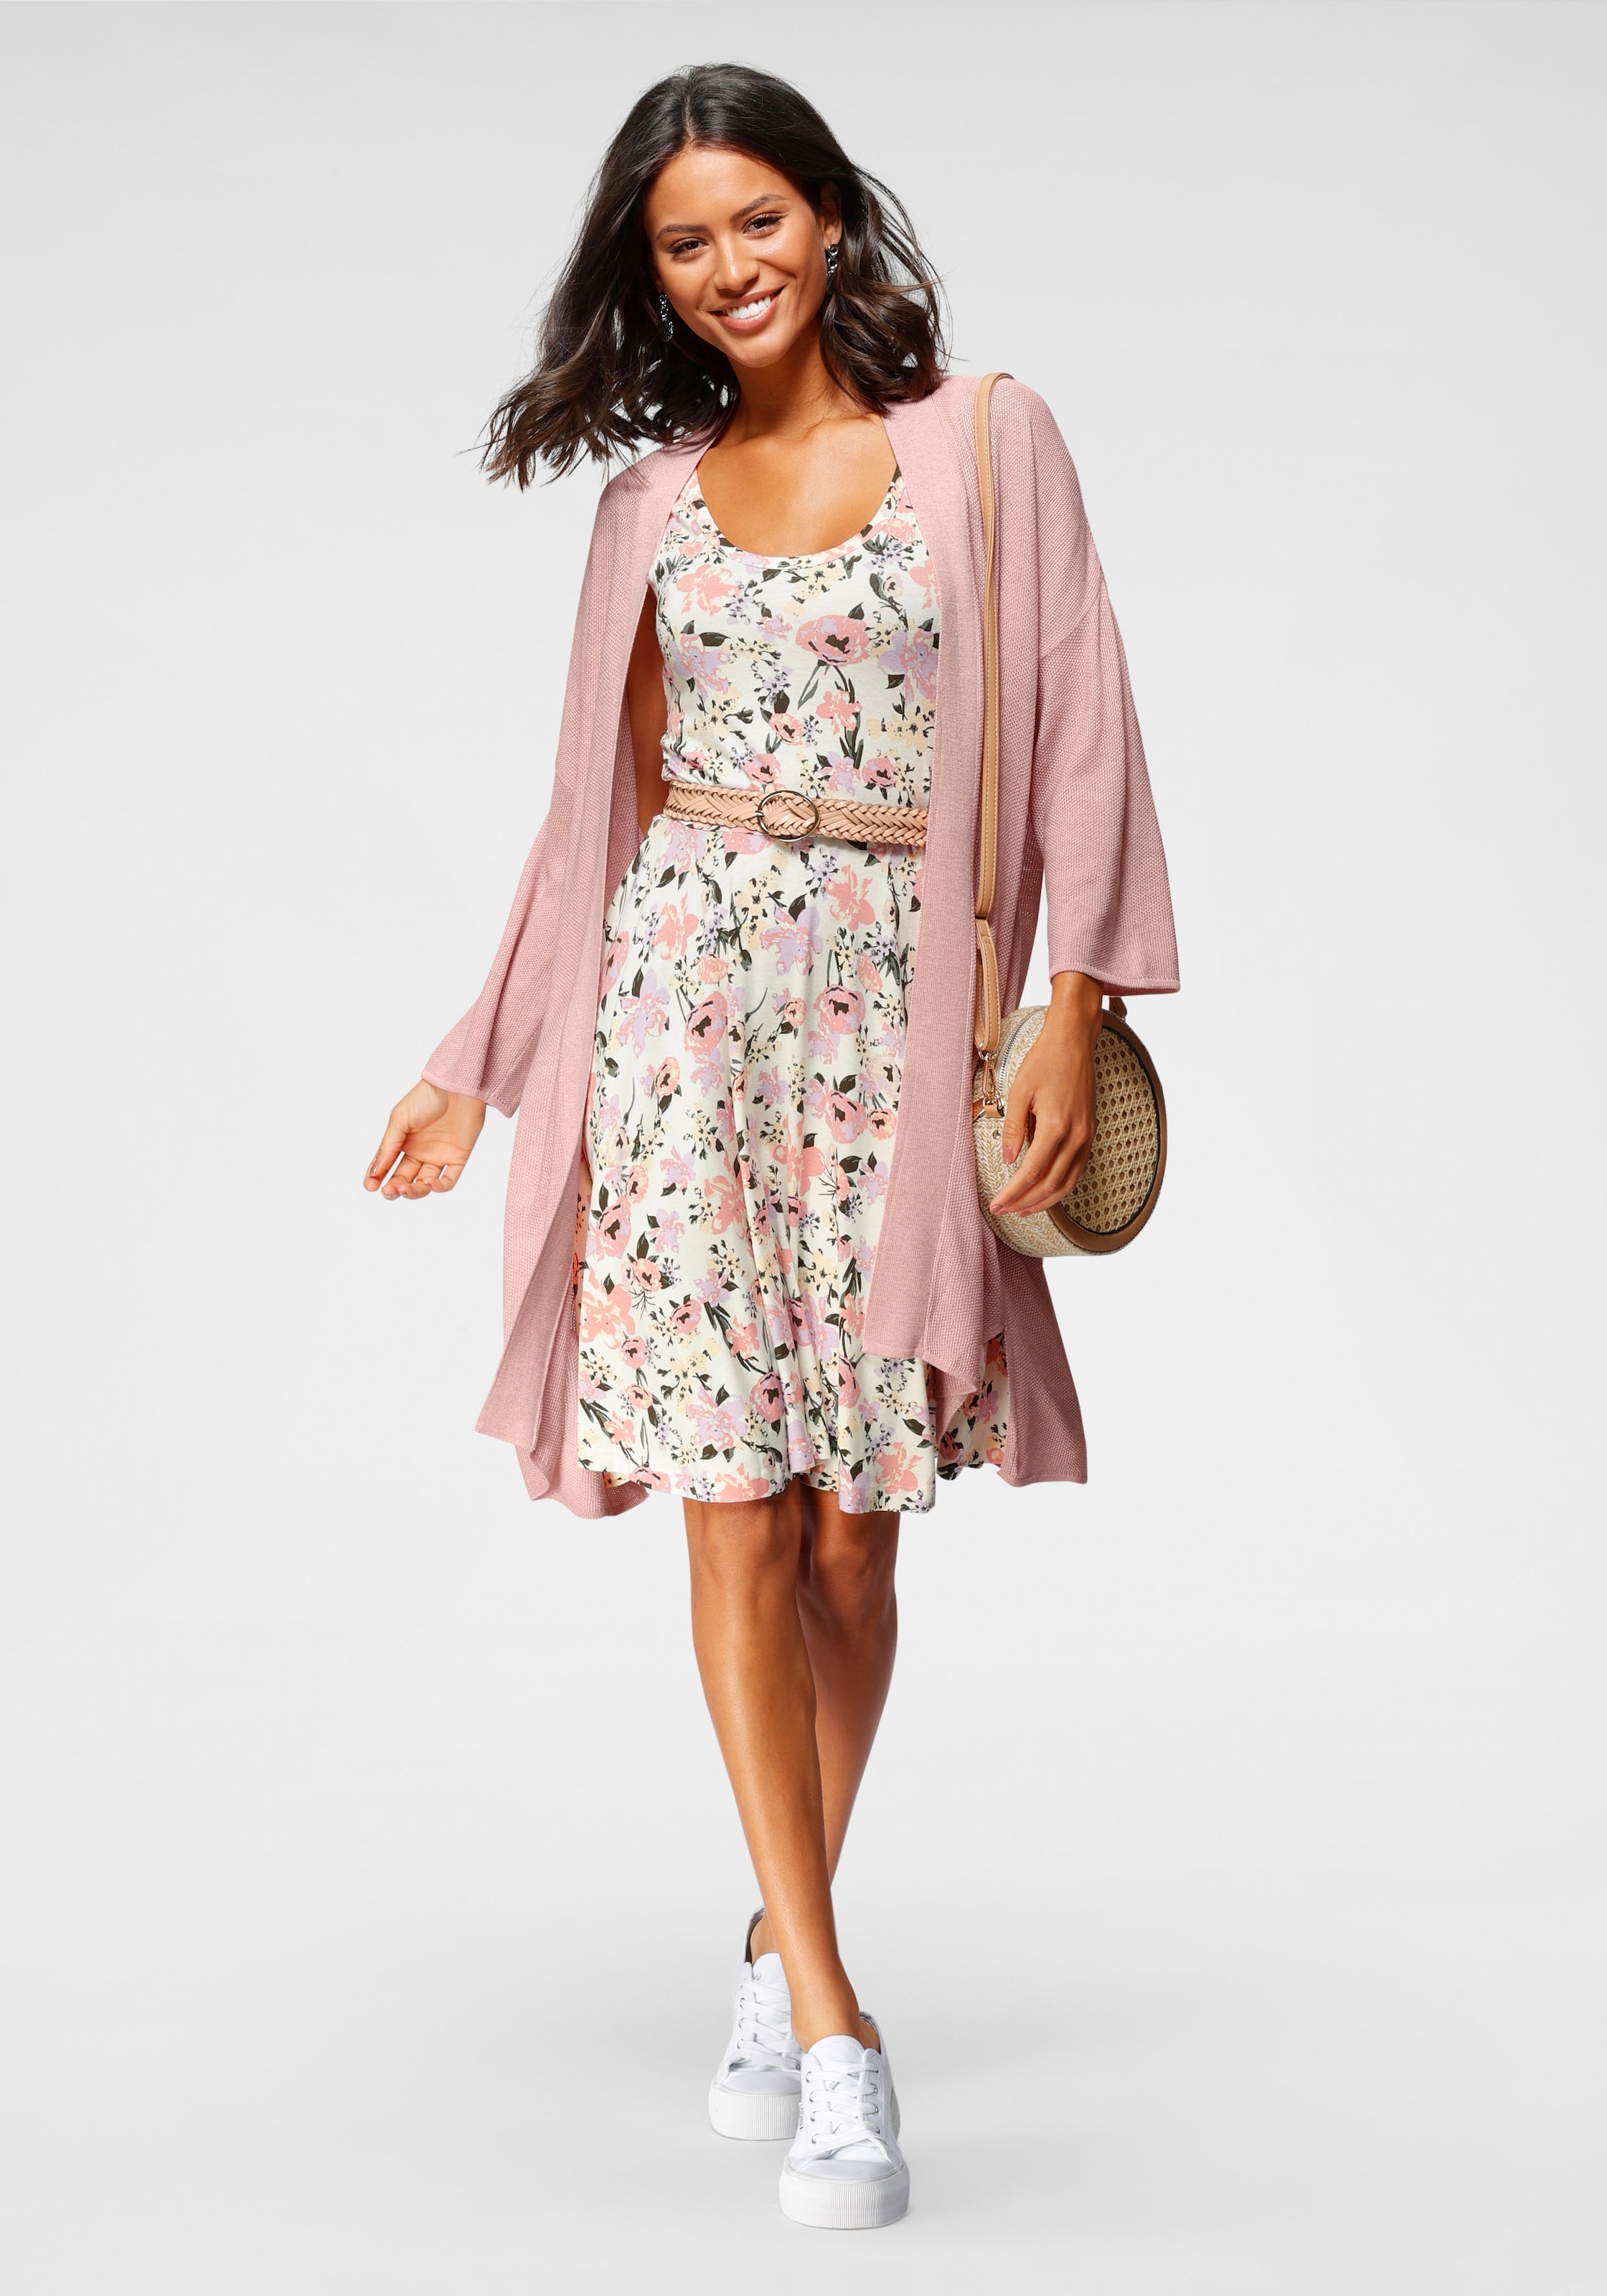 online Laura BAUR Scott | mit Alloverdruck kaufen tollem Jerseykleid